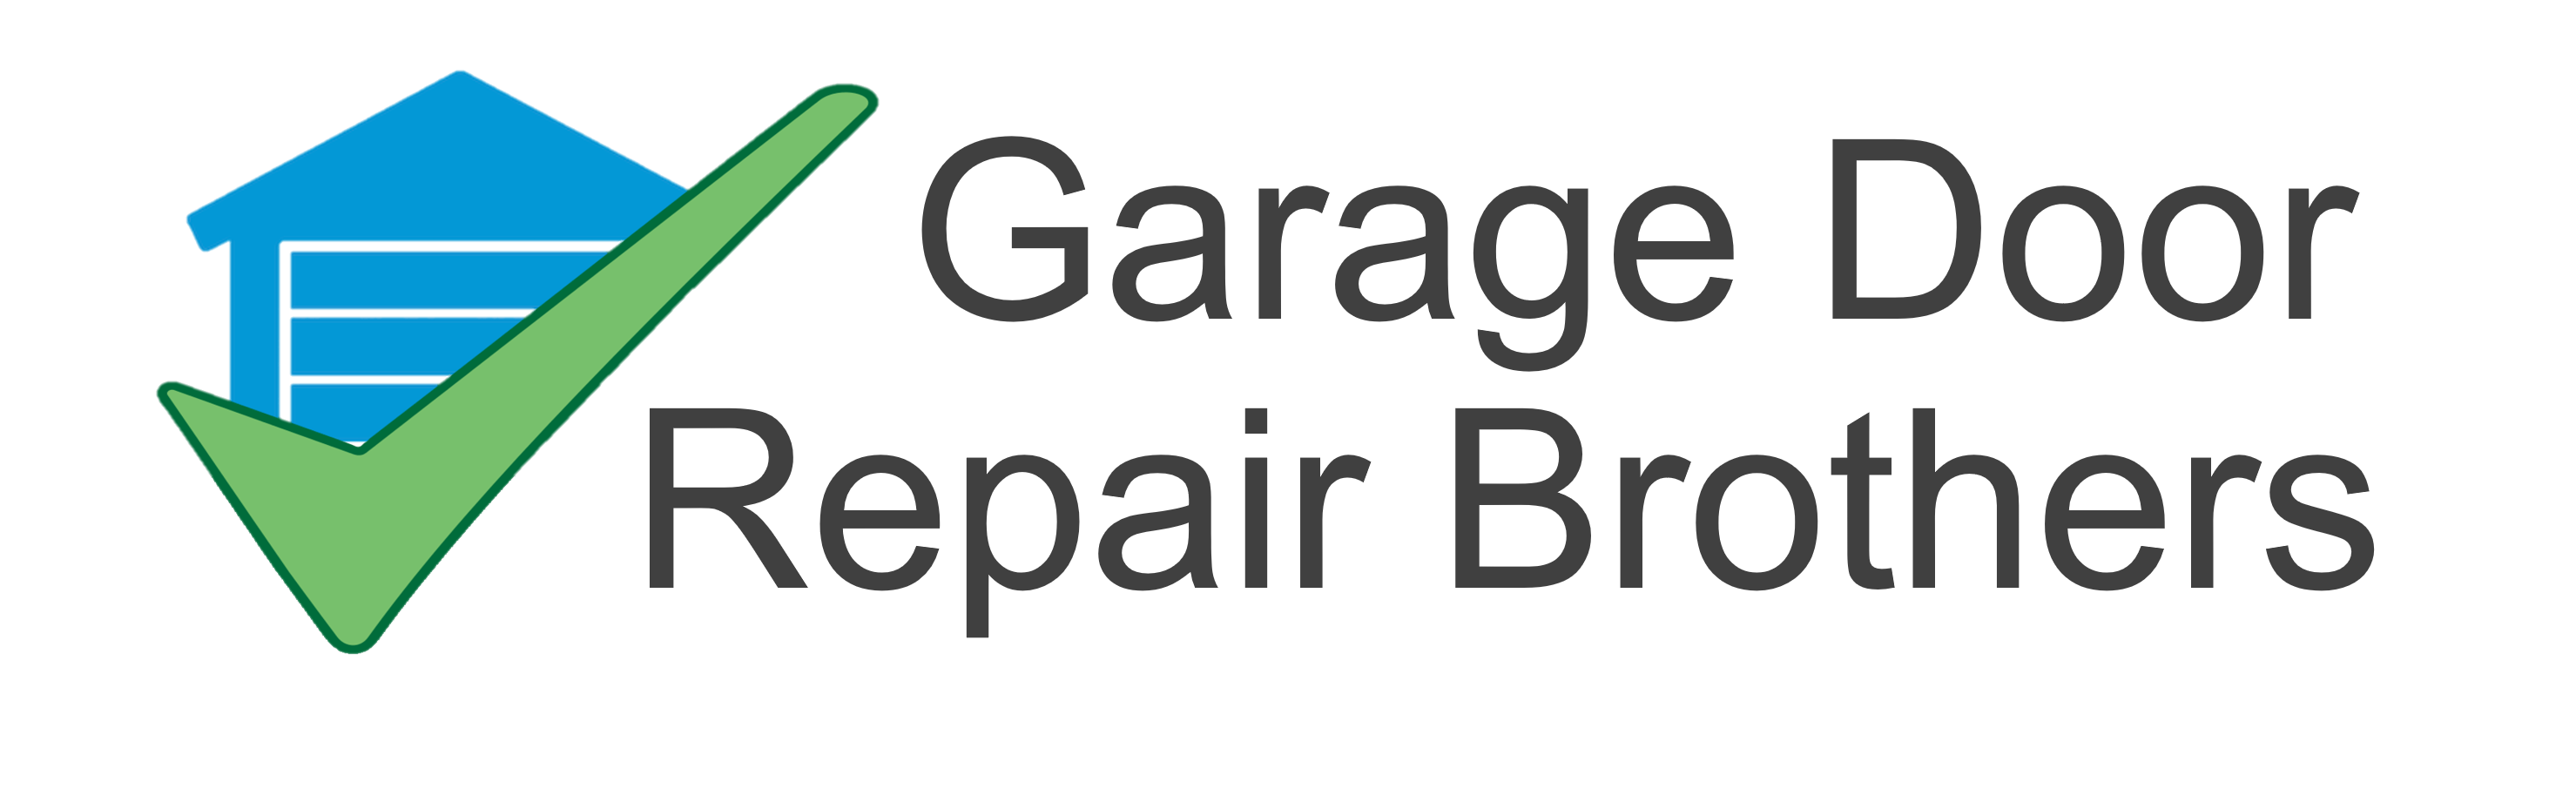 Longmont Garage Door Repair Brothers Logo